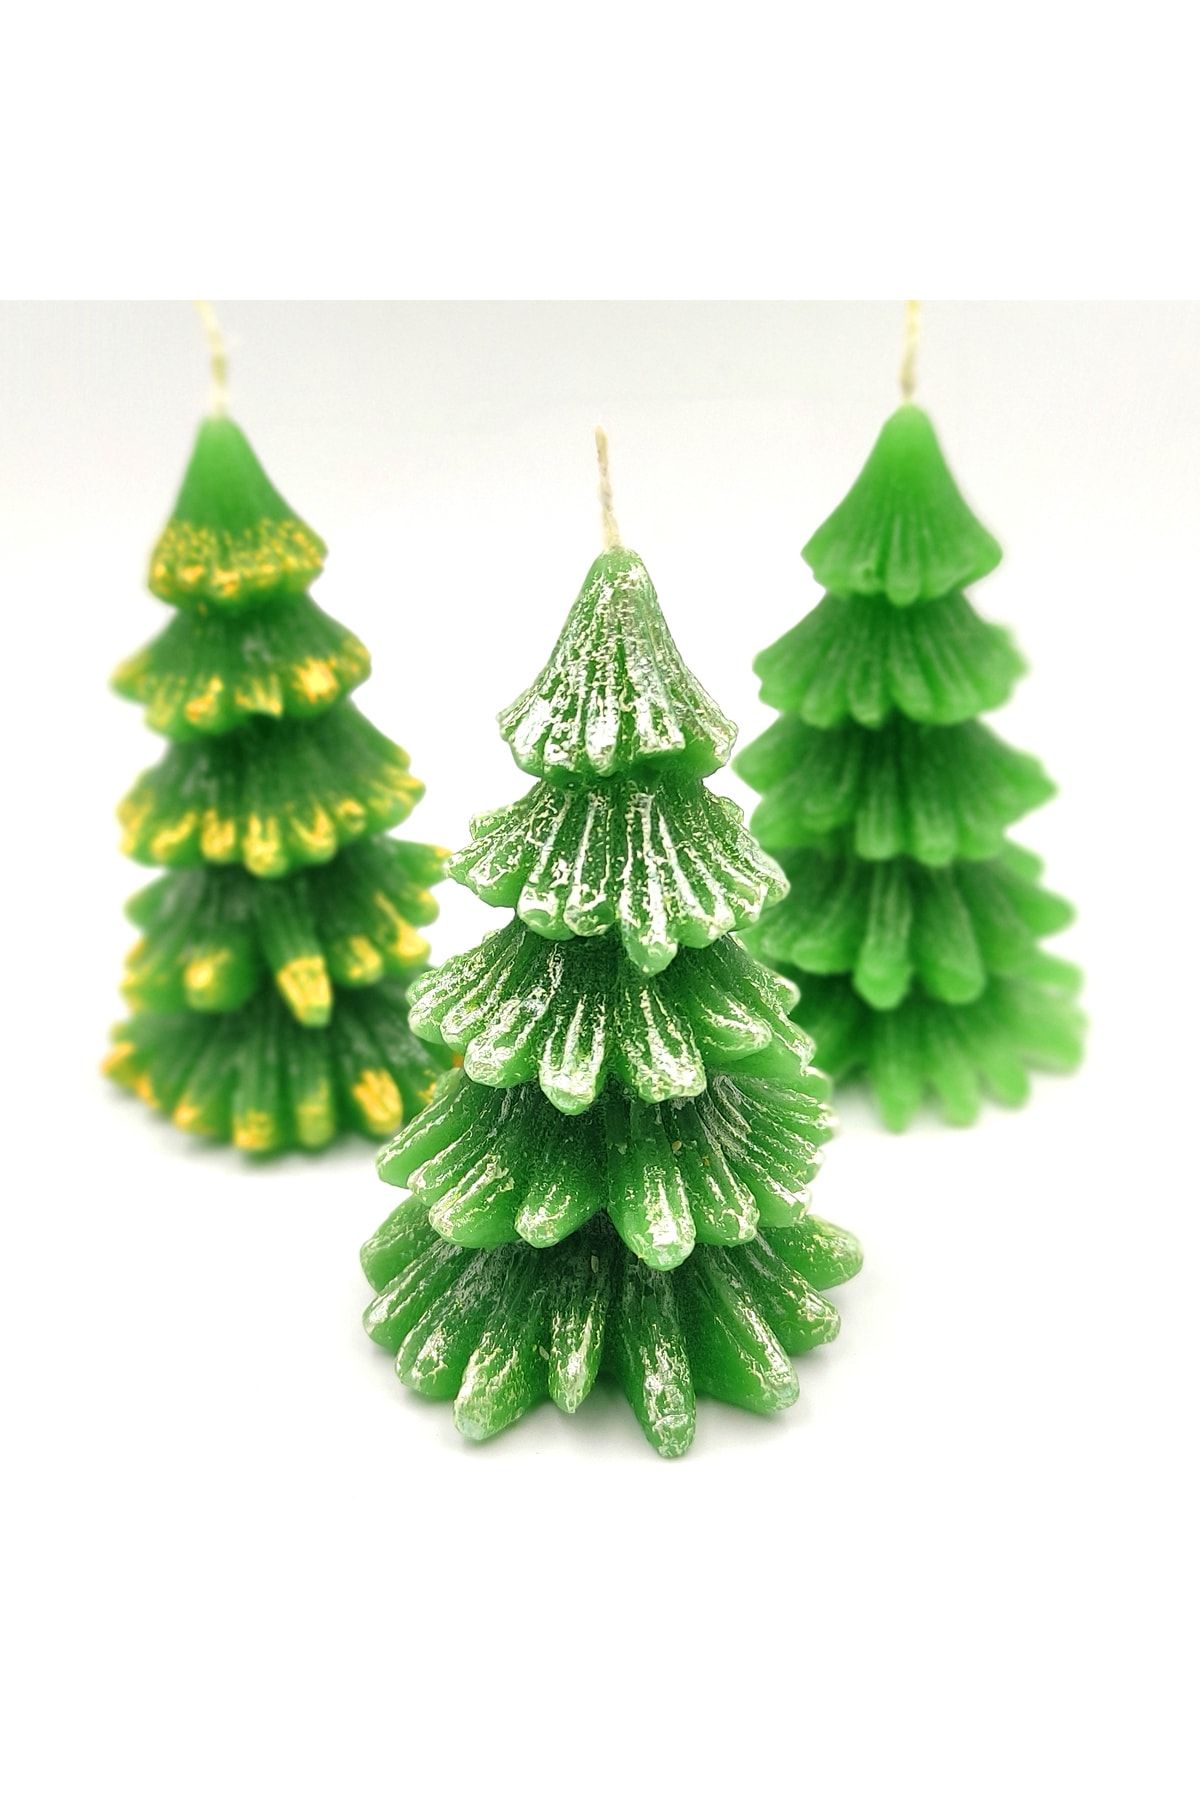 Hediyelik Mumlar Design By Ece 8' Li Yılbaşı Çam Ağacı Mum Simli ( Noel Yeniyıl Christmas Konsept)